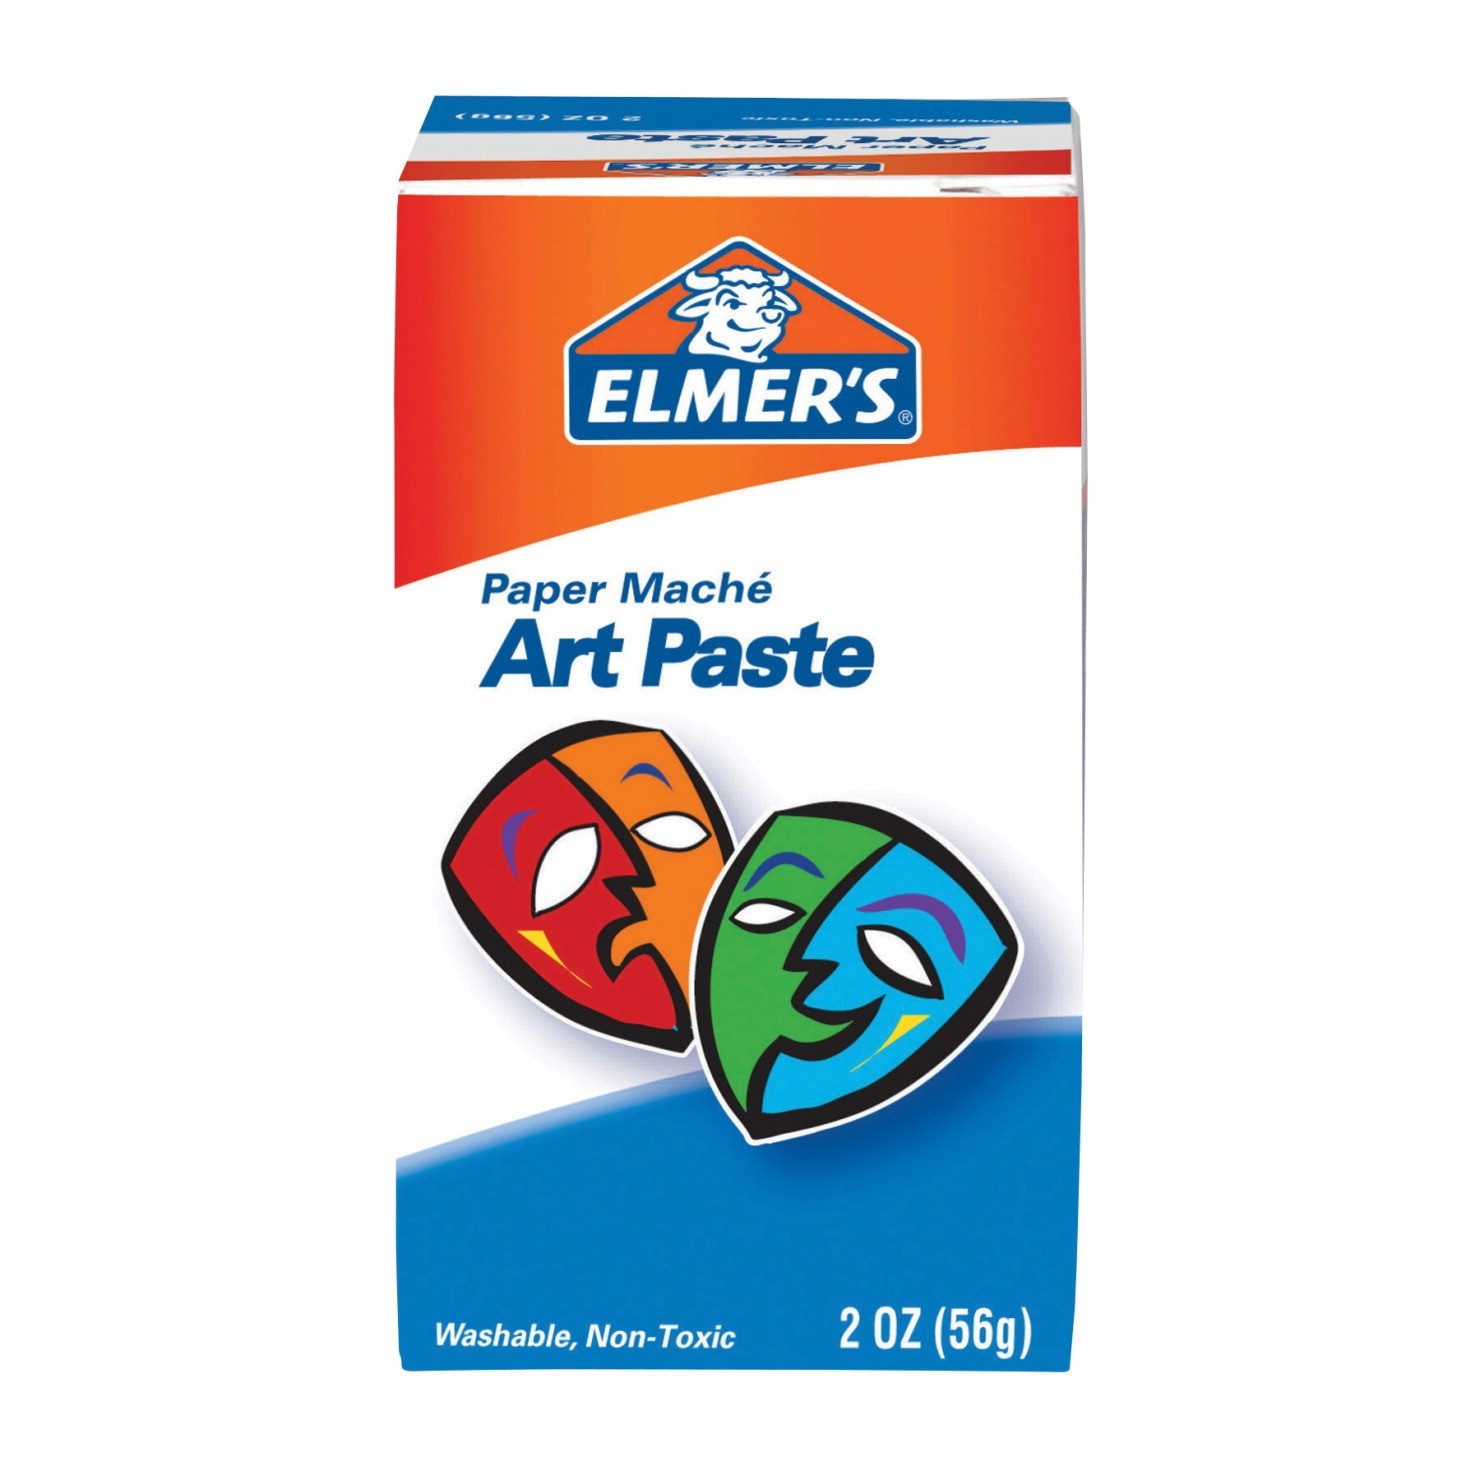 Elmer's Paper Mache Art Paste, Washable, Non-Toxic, 2 Oz Package Makes 4 Quarts